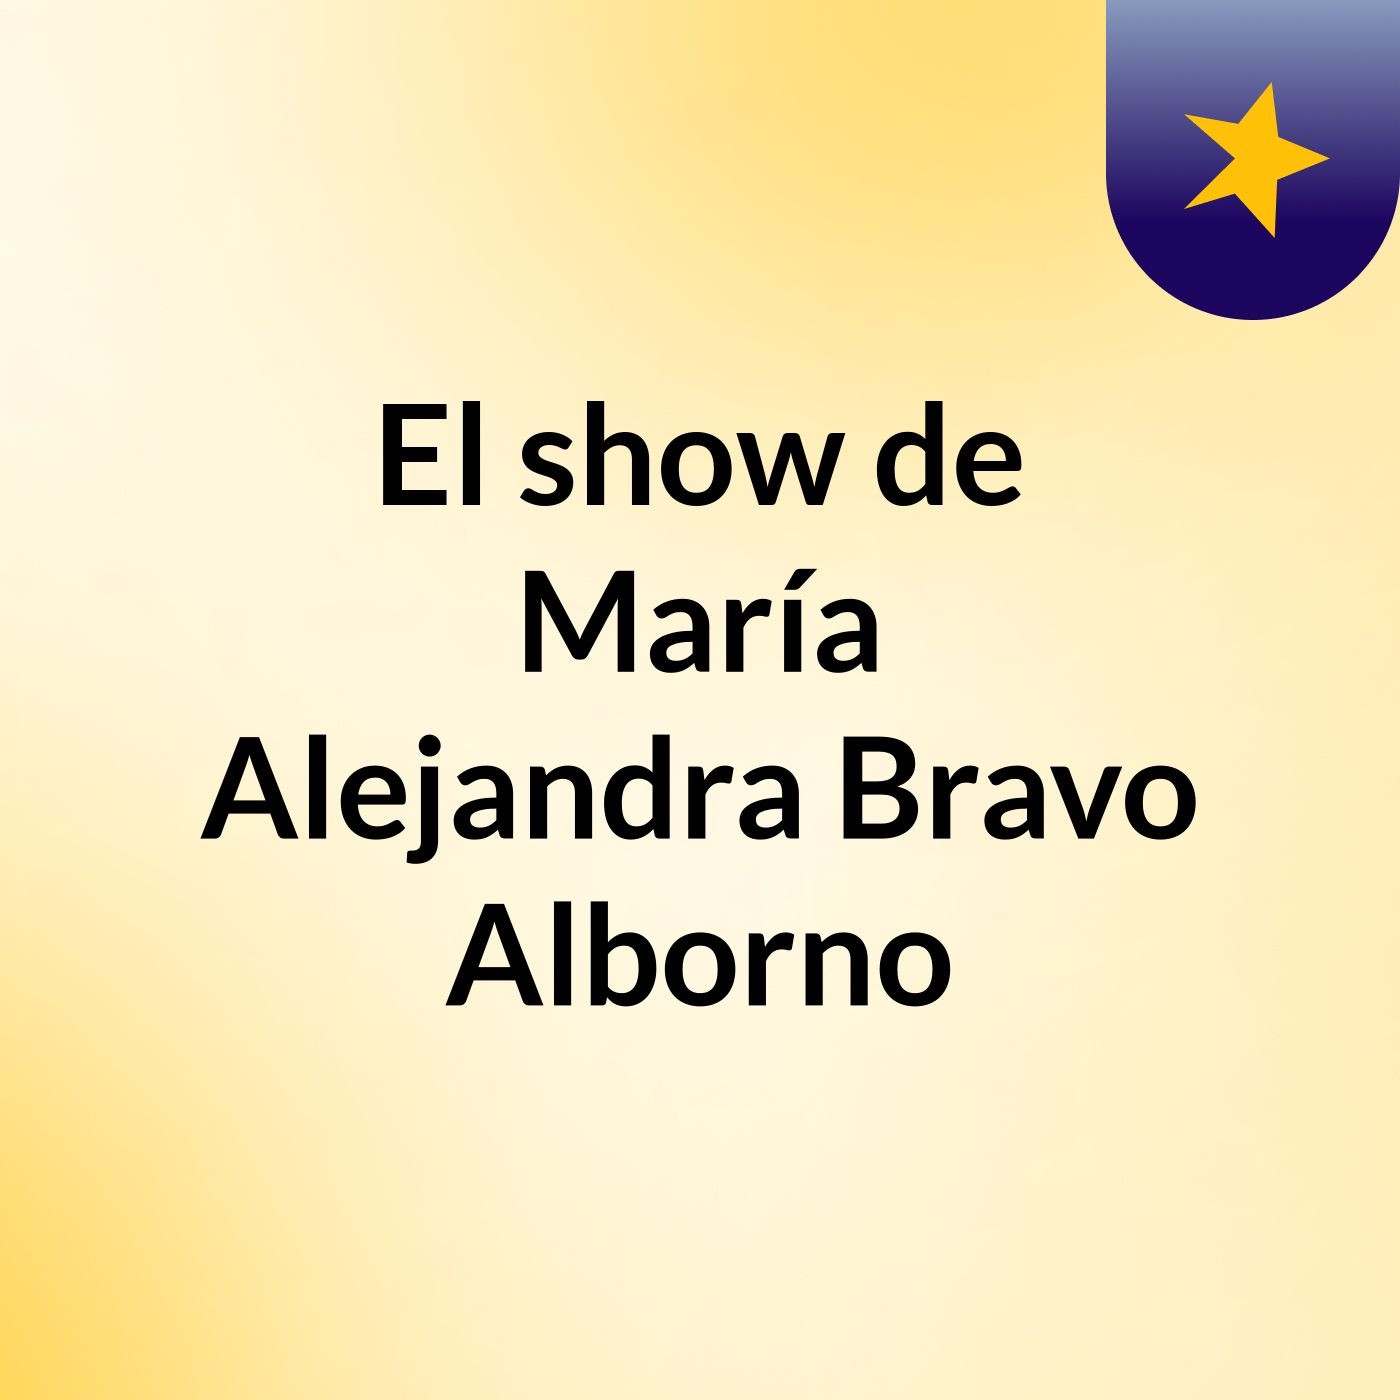 El show de María Alejandra Bravo Alborno